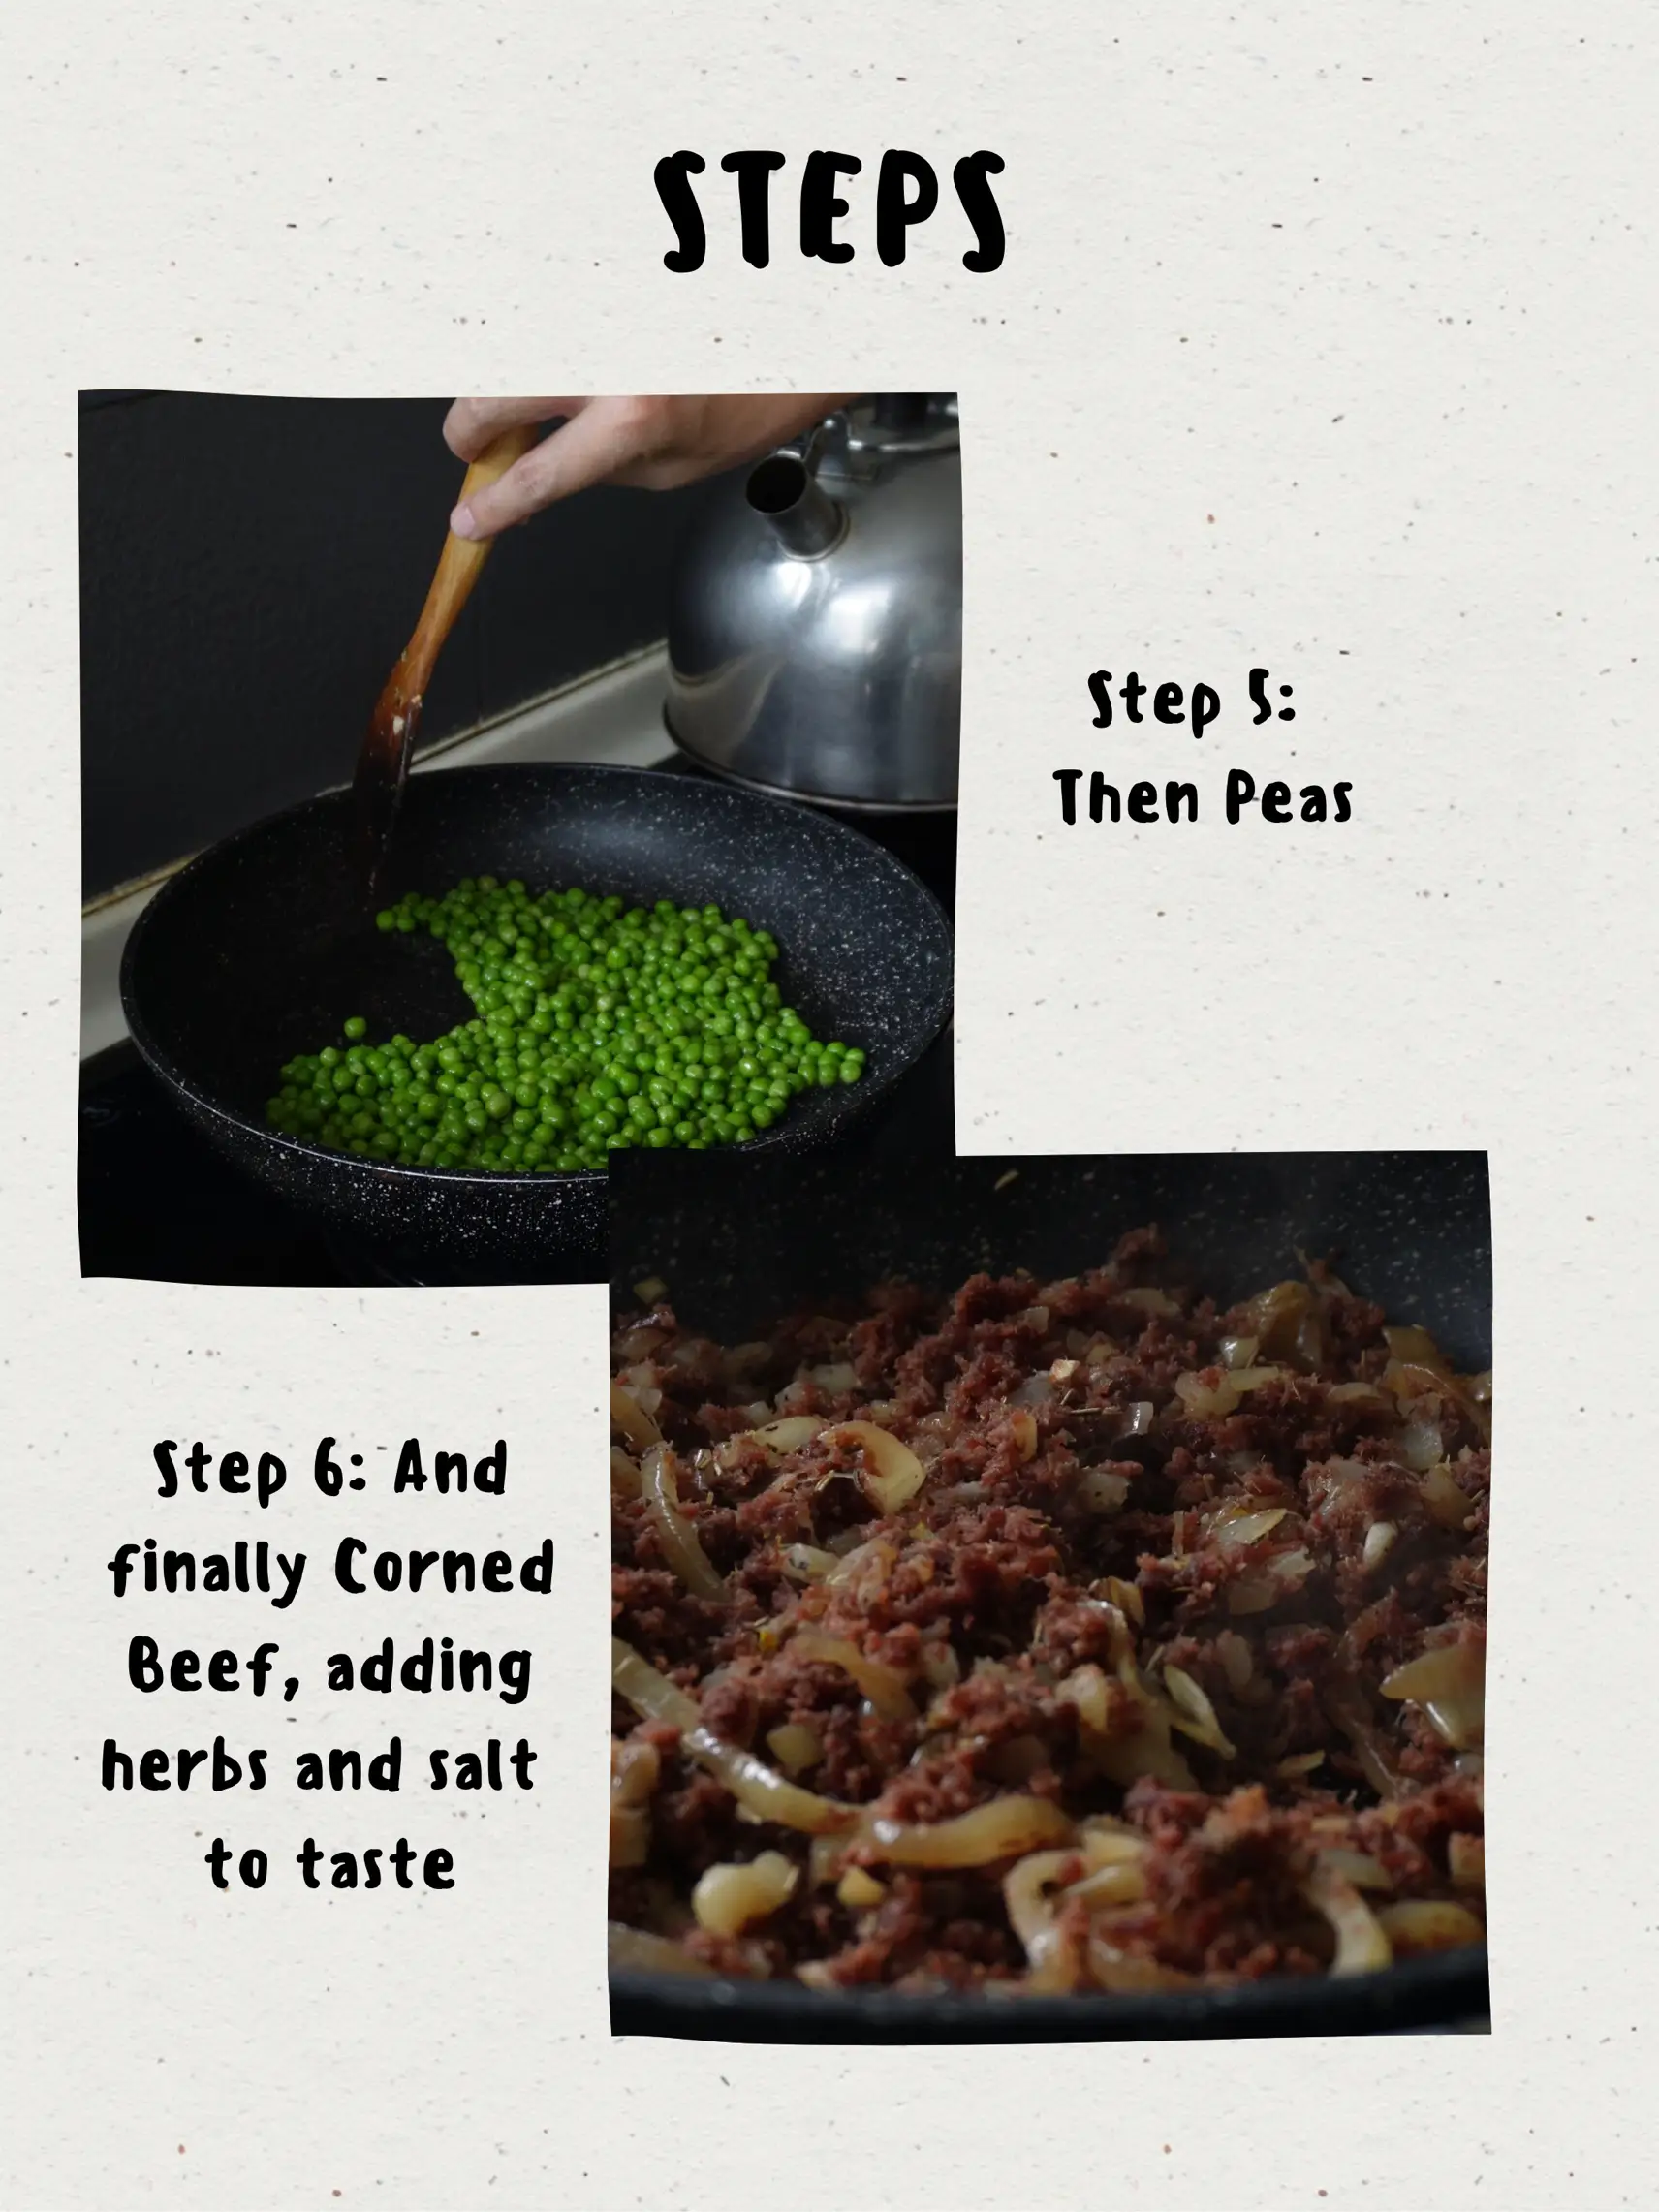 Corned Beef Hash Pot Stickers - Simple Comfort Food